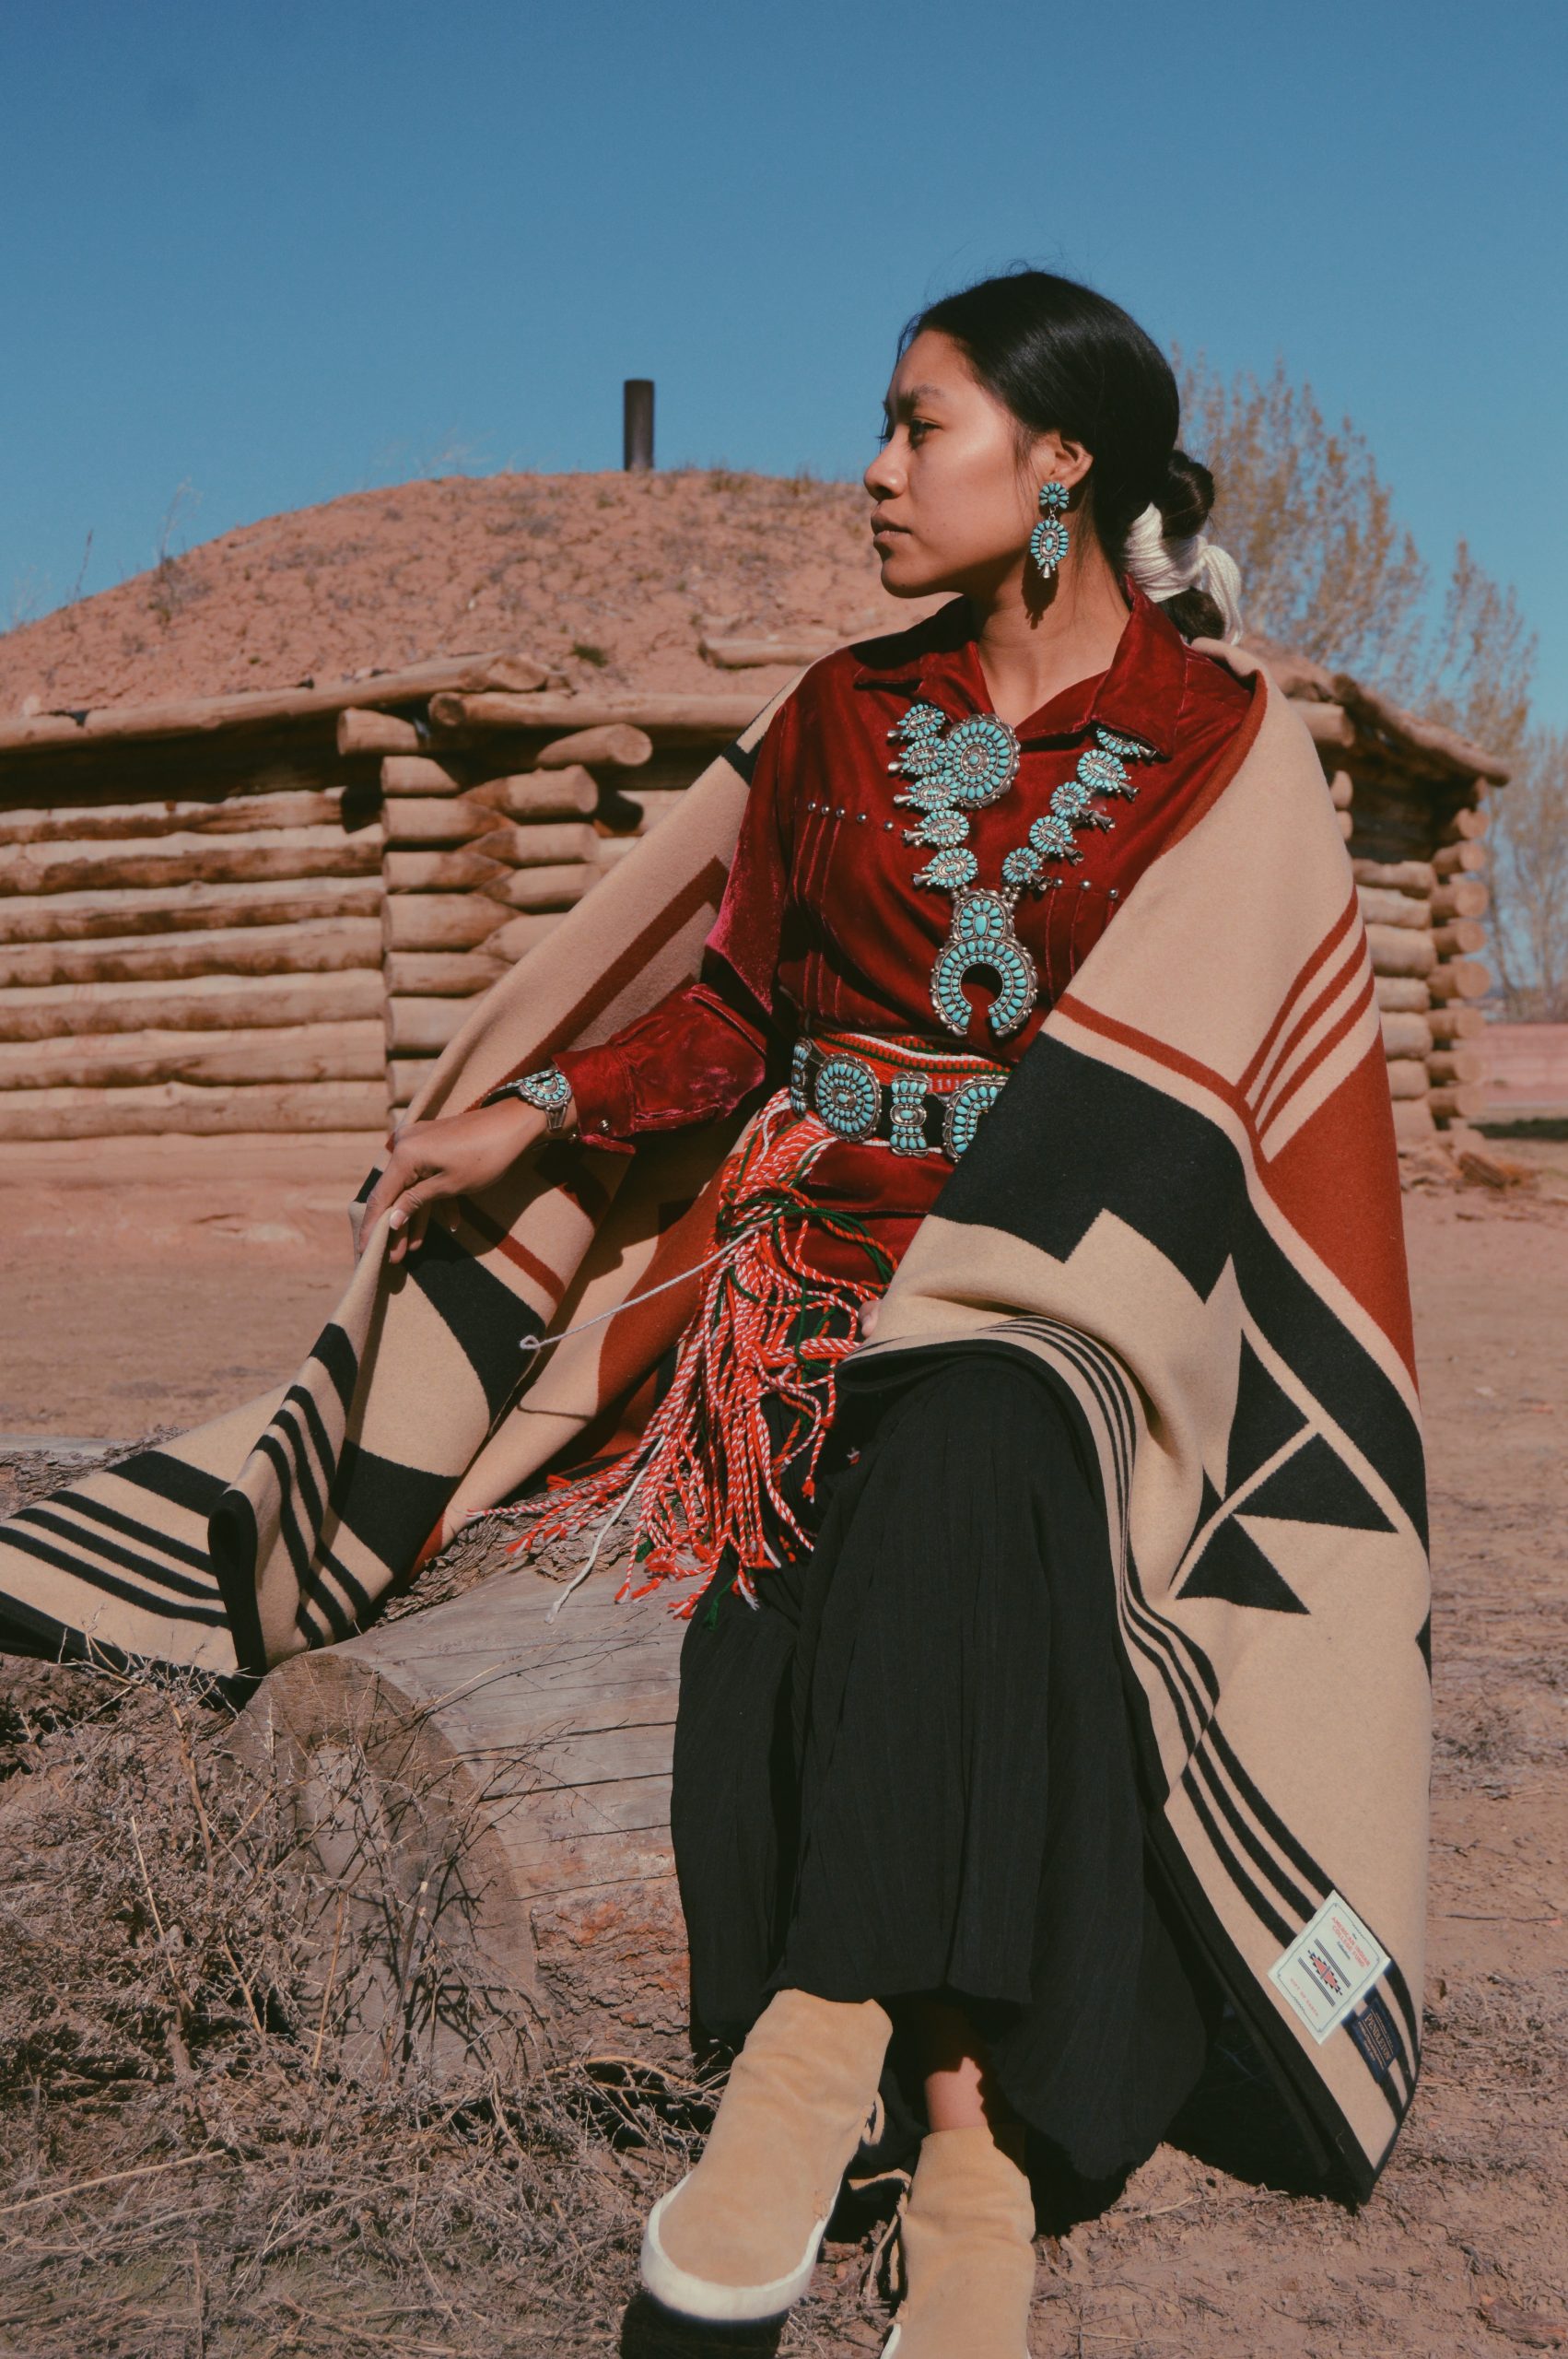 Shondina Lee models the new blanket outside of a Navajo Hogan.